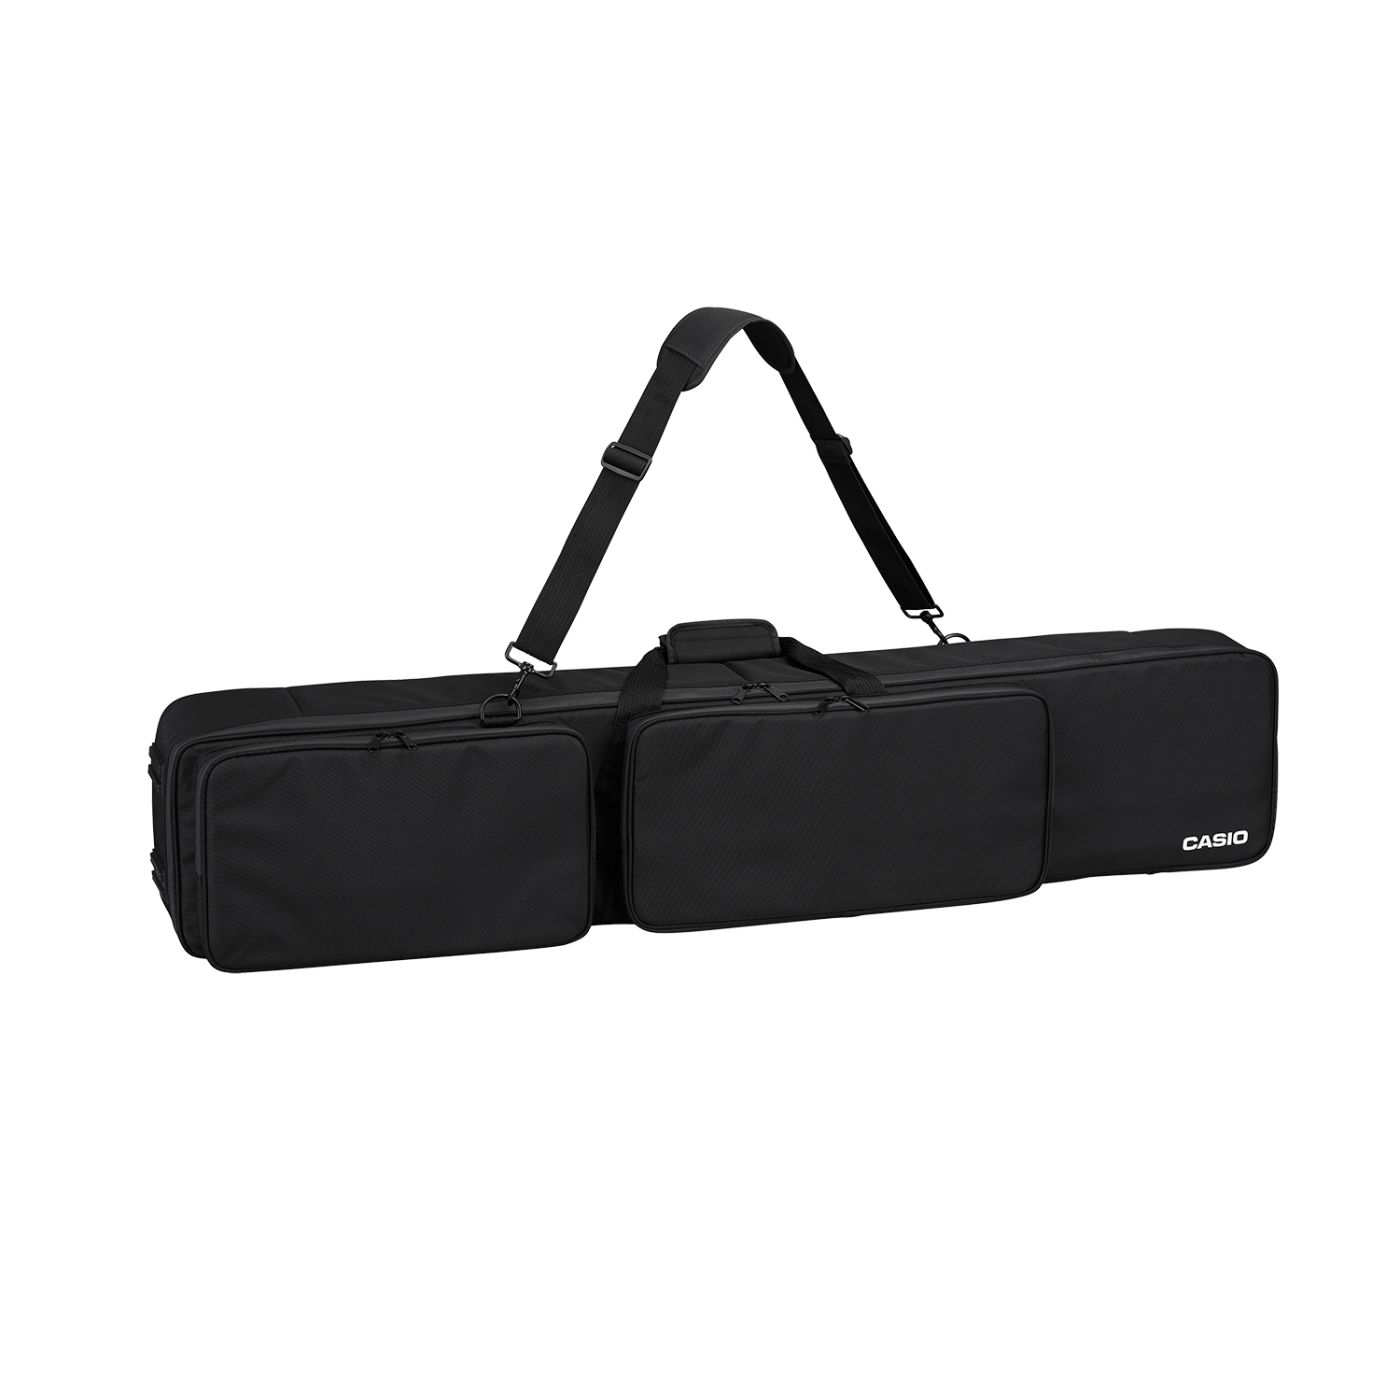 Casio SC-800 Portable Piano Carry Case